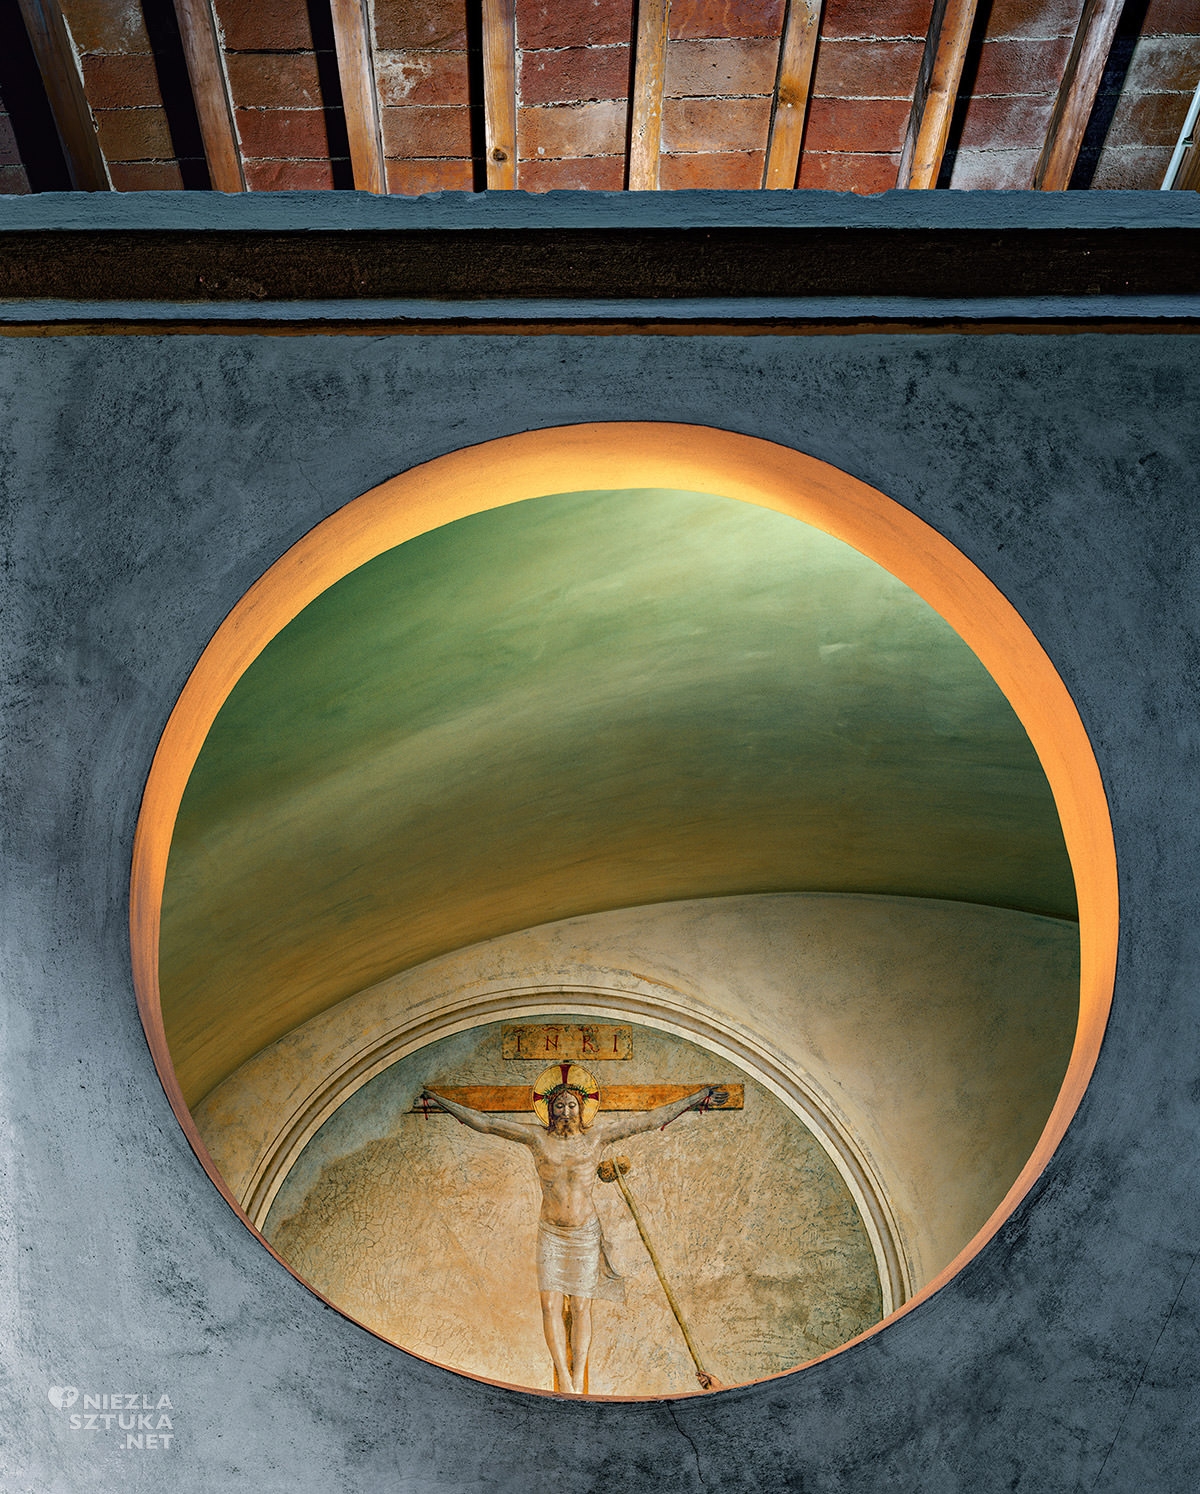 Fra Angelico, Robert Polidori, sztuka włoska, klasztor San Marco, Niezła sztuka